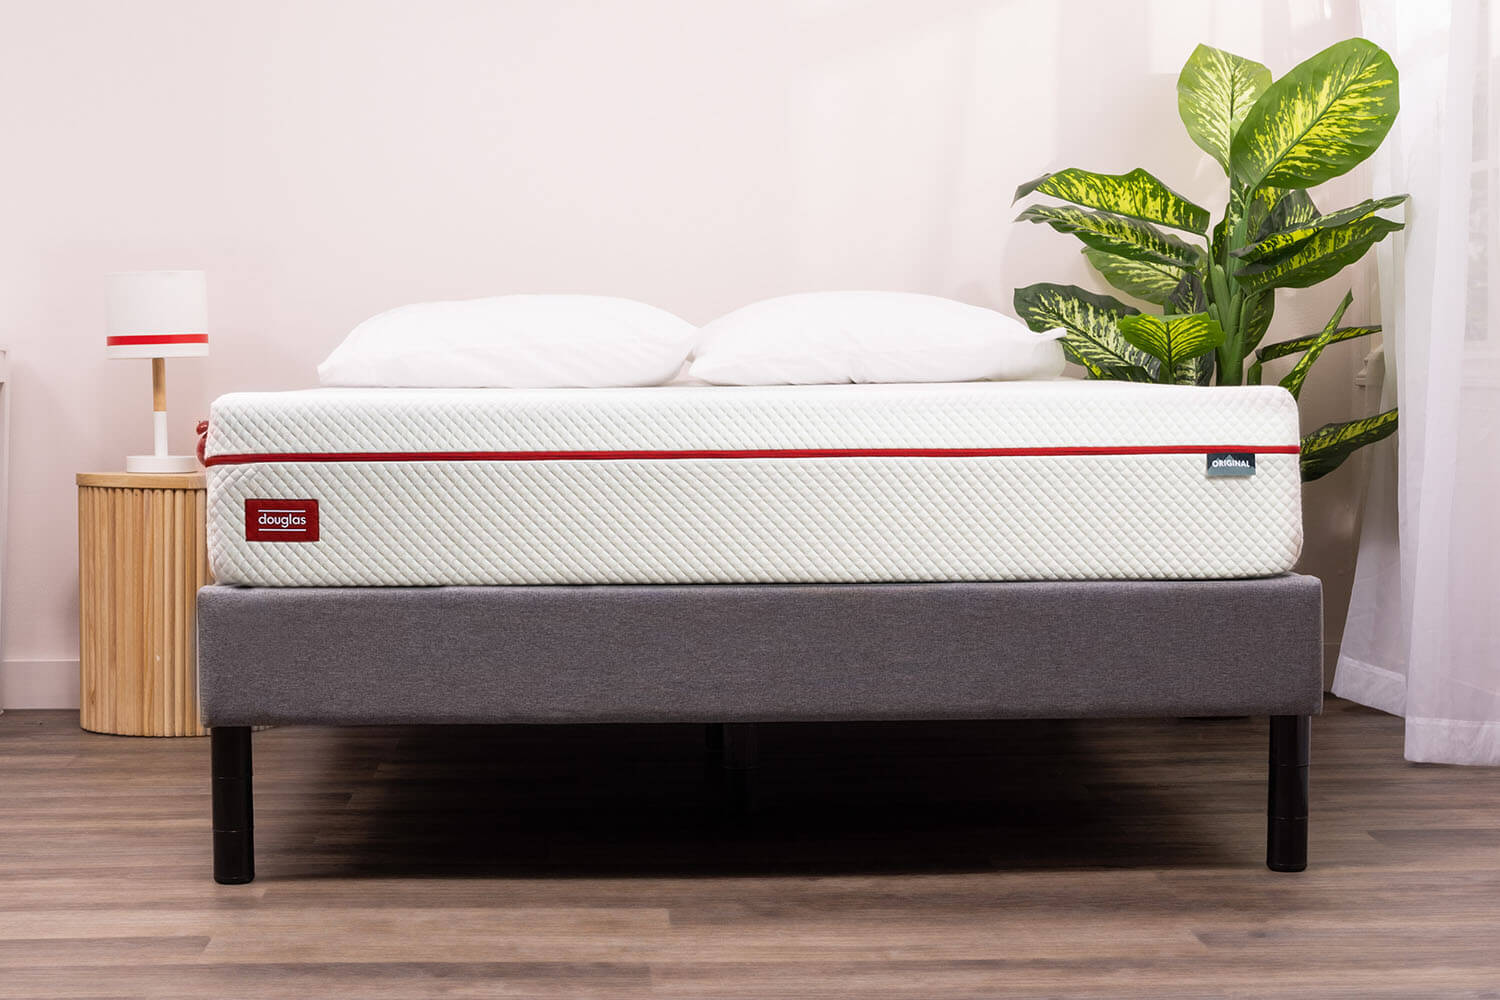 Douglas Original mattress on a Platform Bed